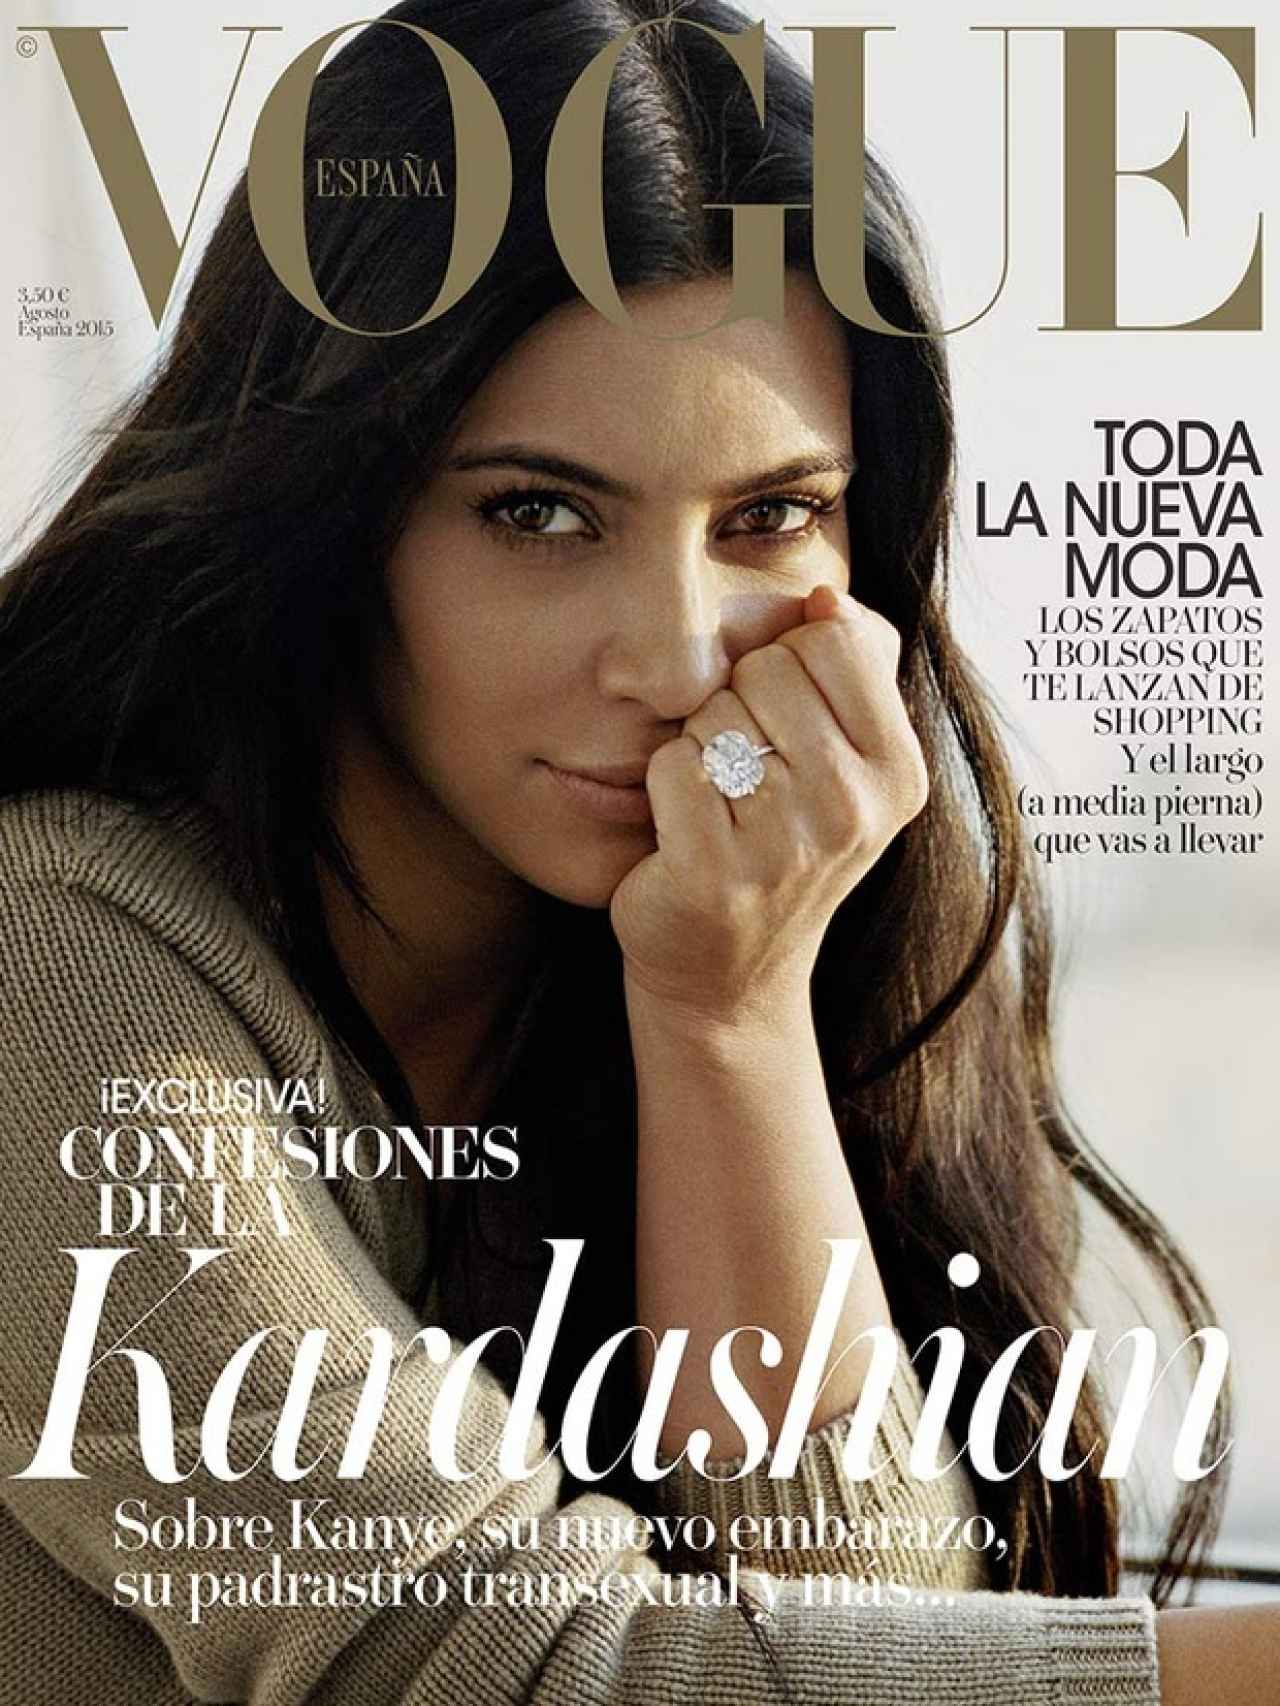 La revista Vogue es la lectura favorita de la 'it girl'.